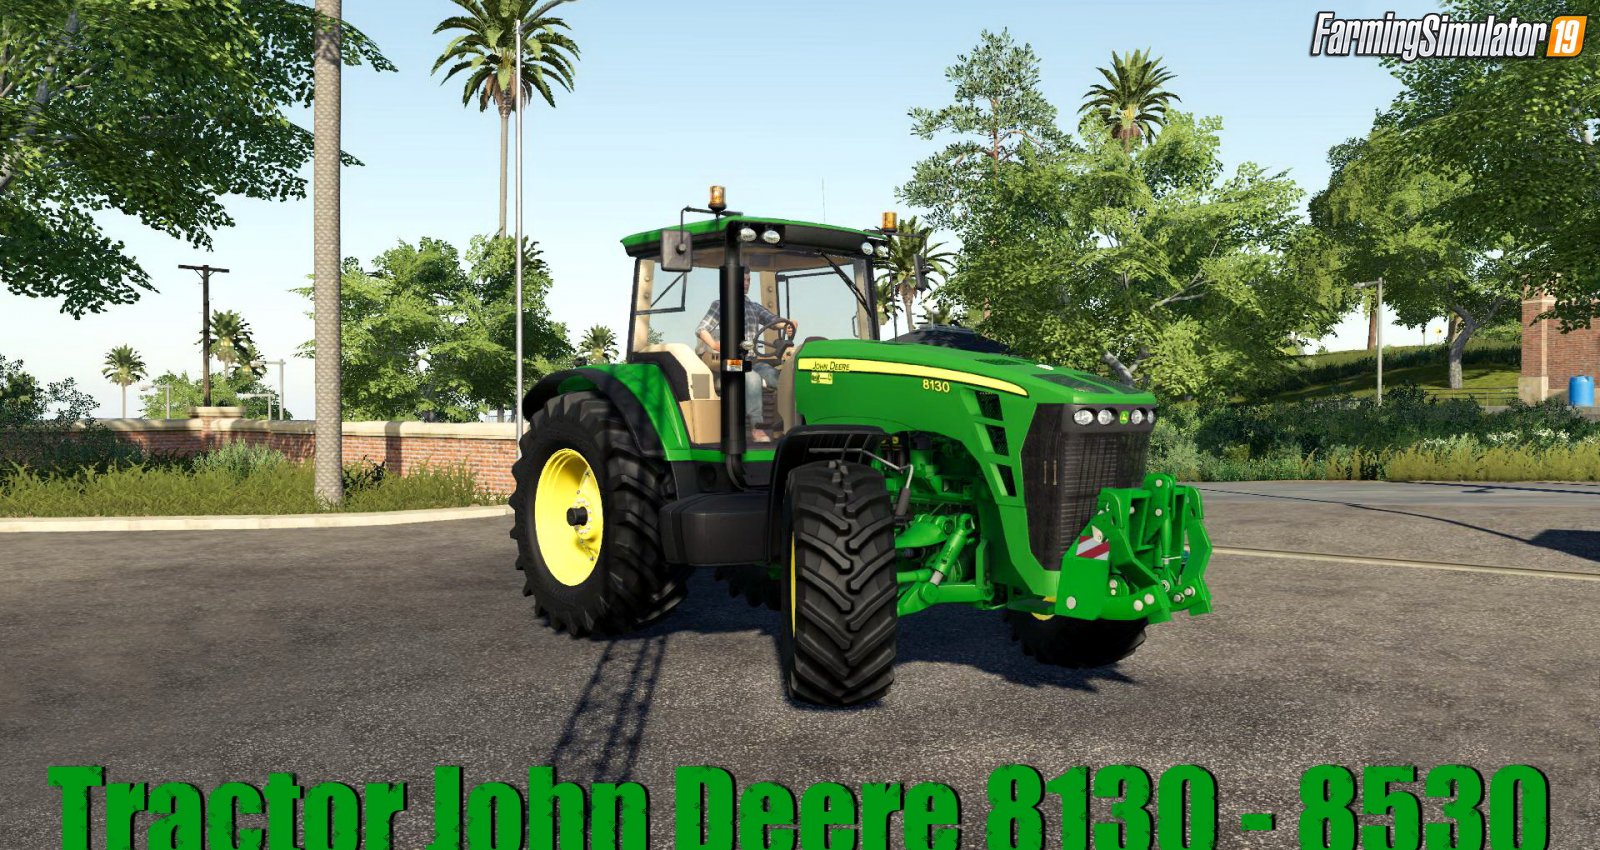 Tractor John Deere 8130 - 8530 v1.1 for FS19